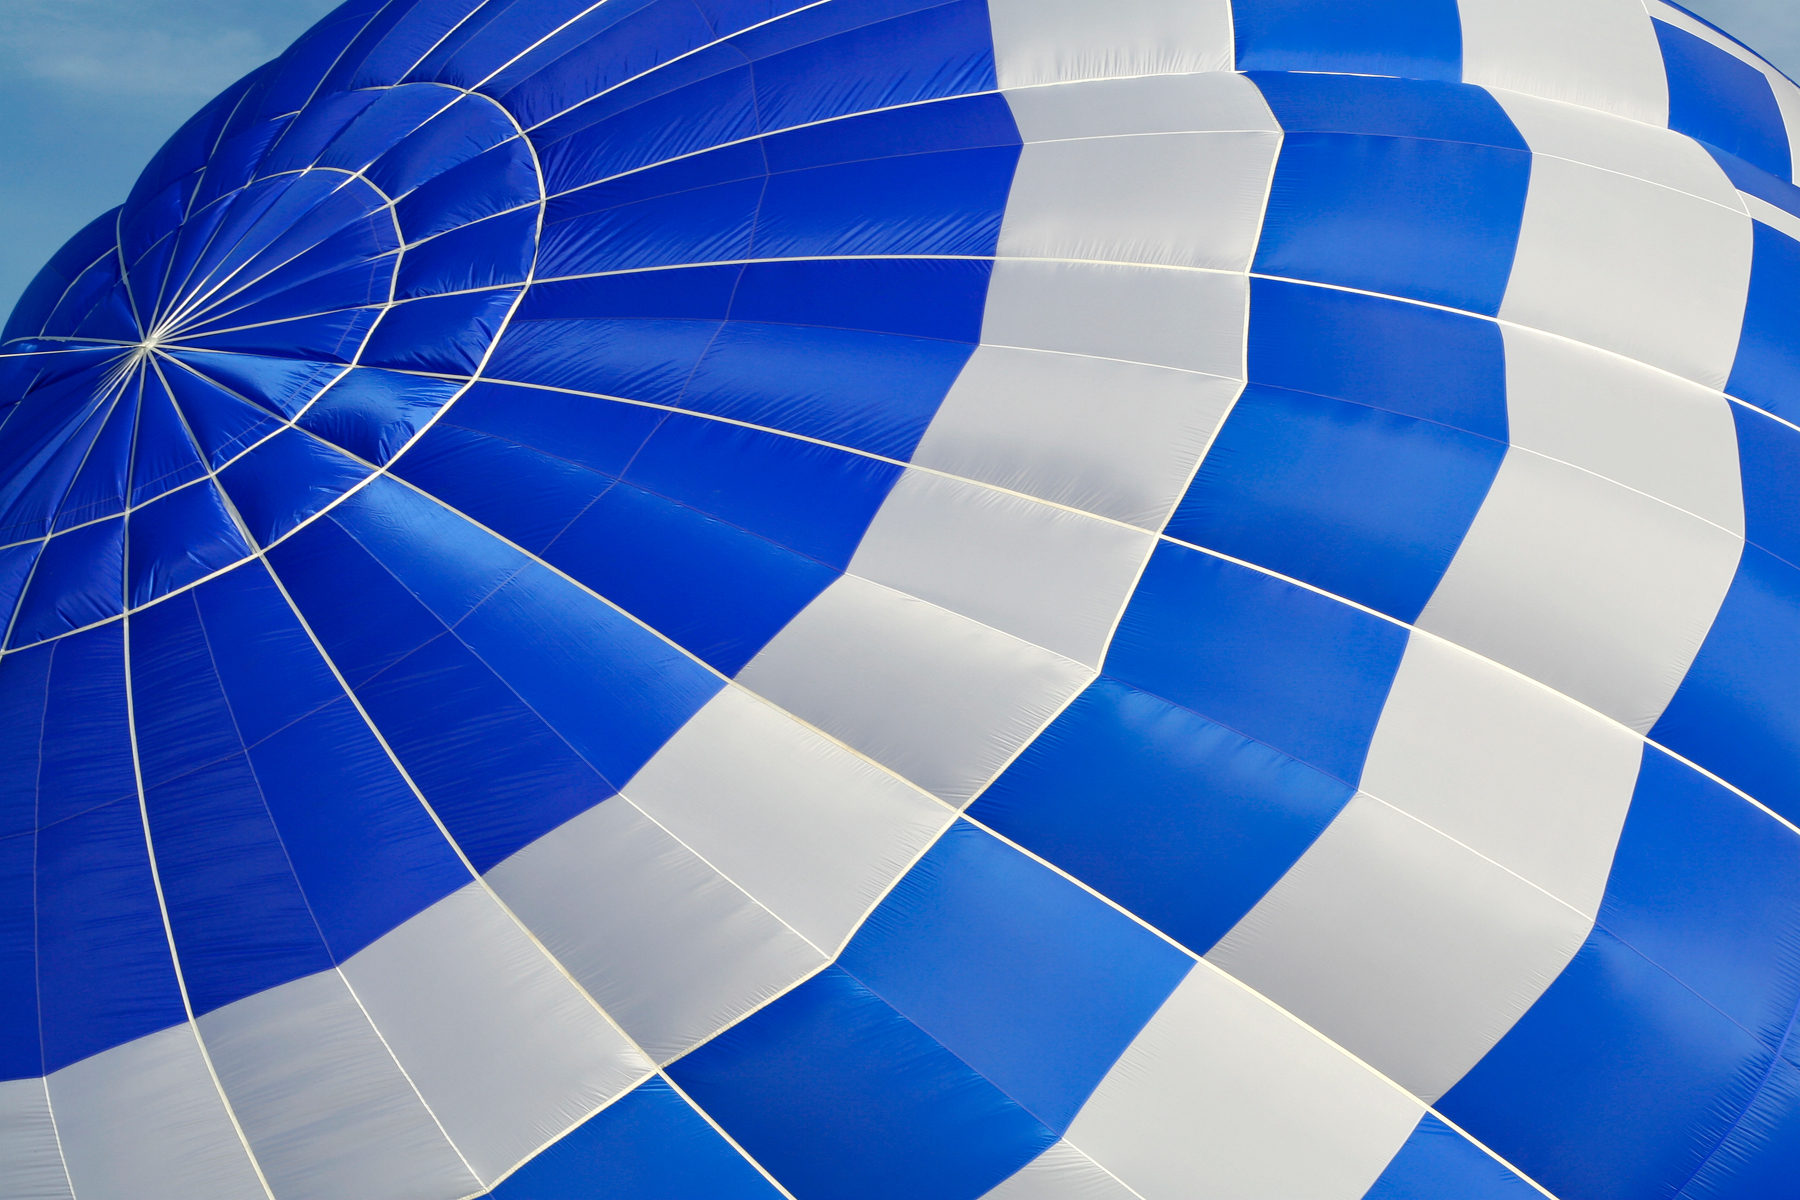 Hot air balloon close-up photo